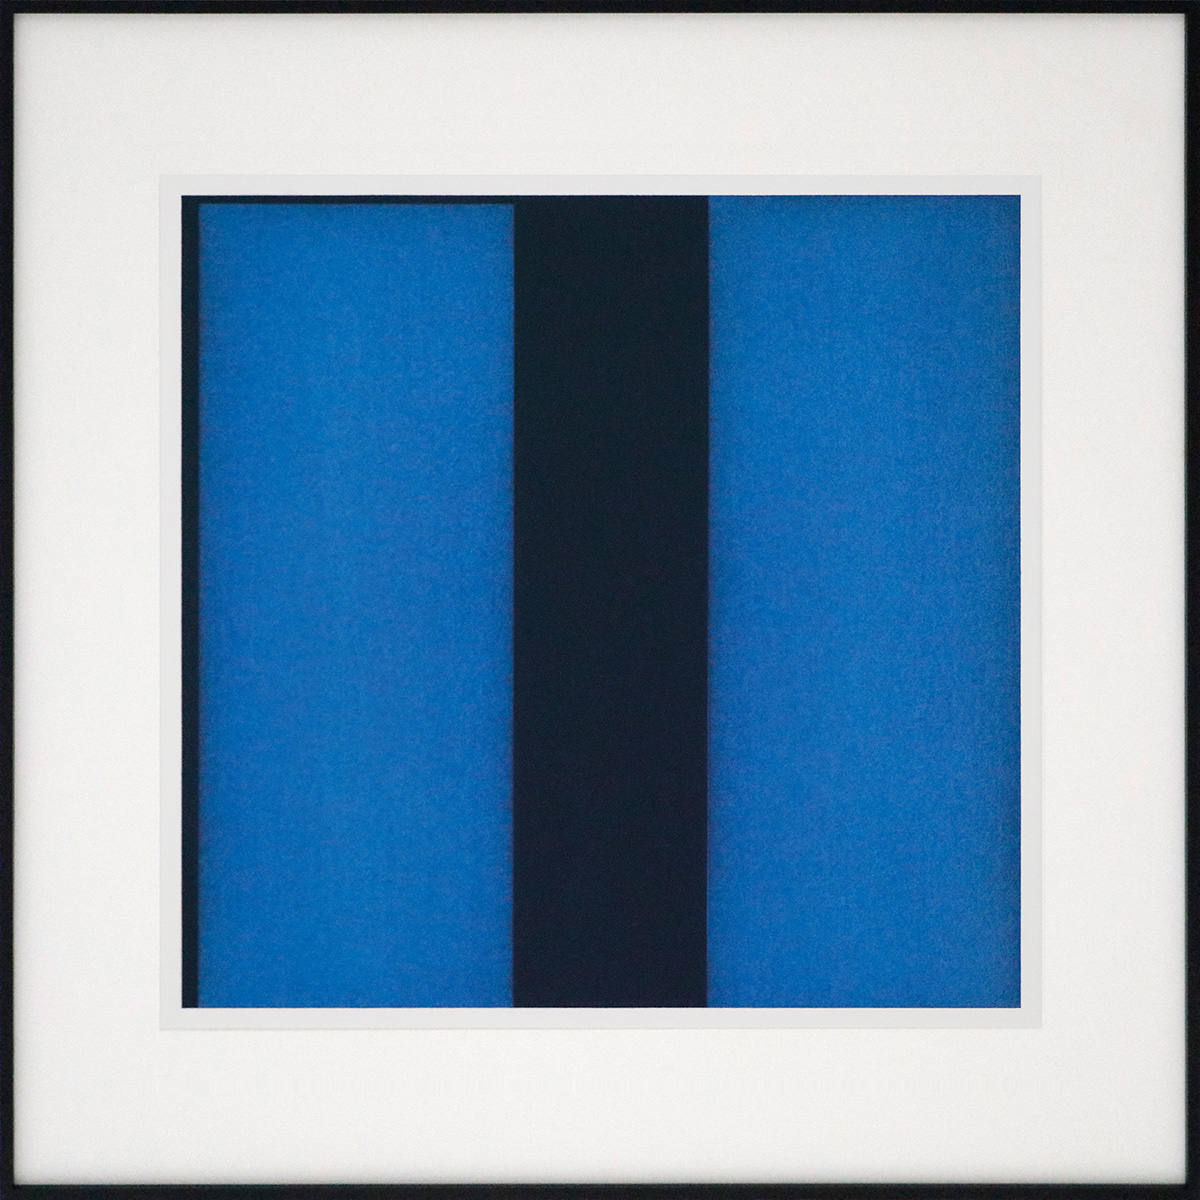 Unbound Blau, 200150 x 50 cm in 70 x 70 cmAcryl und Reisskohle auf Papier; gerahmt, Museumsglas